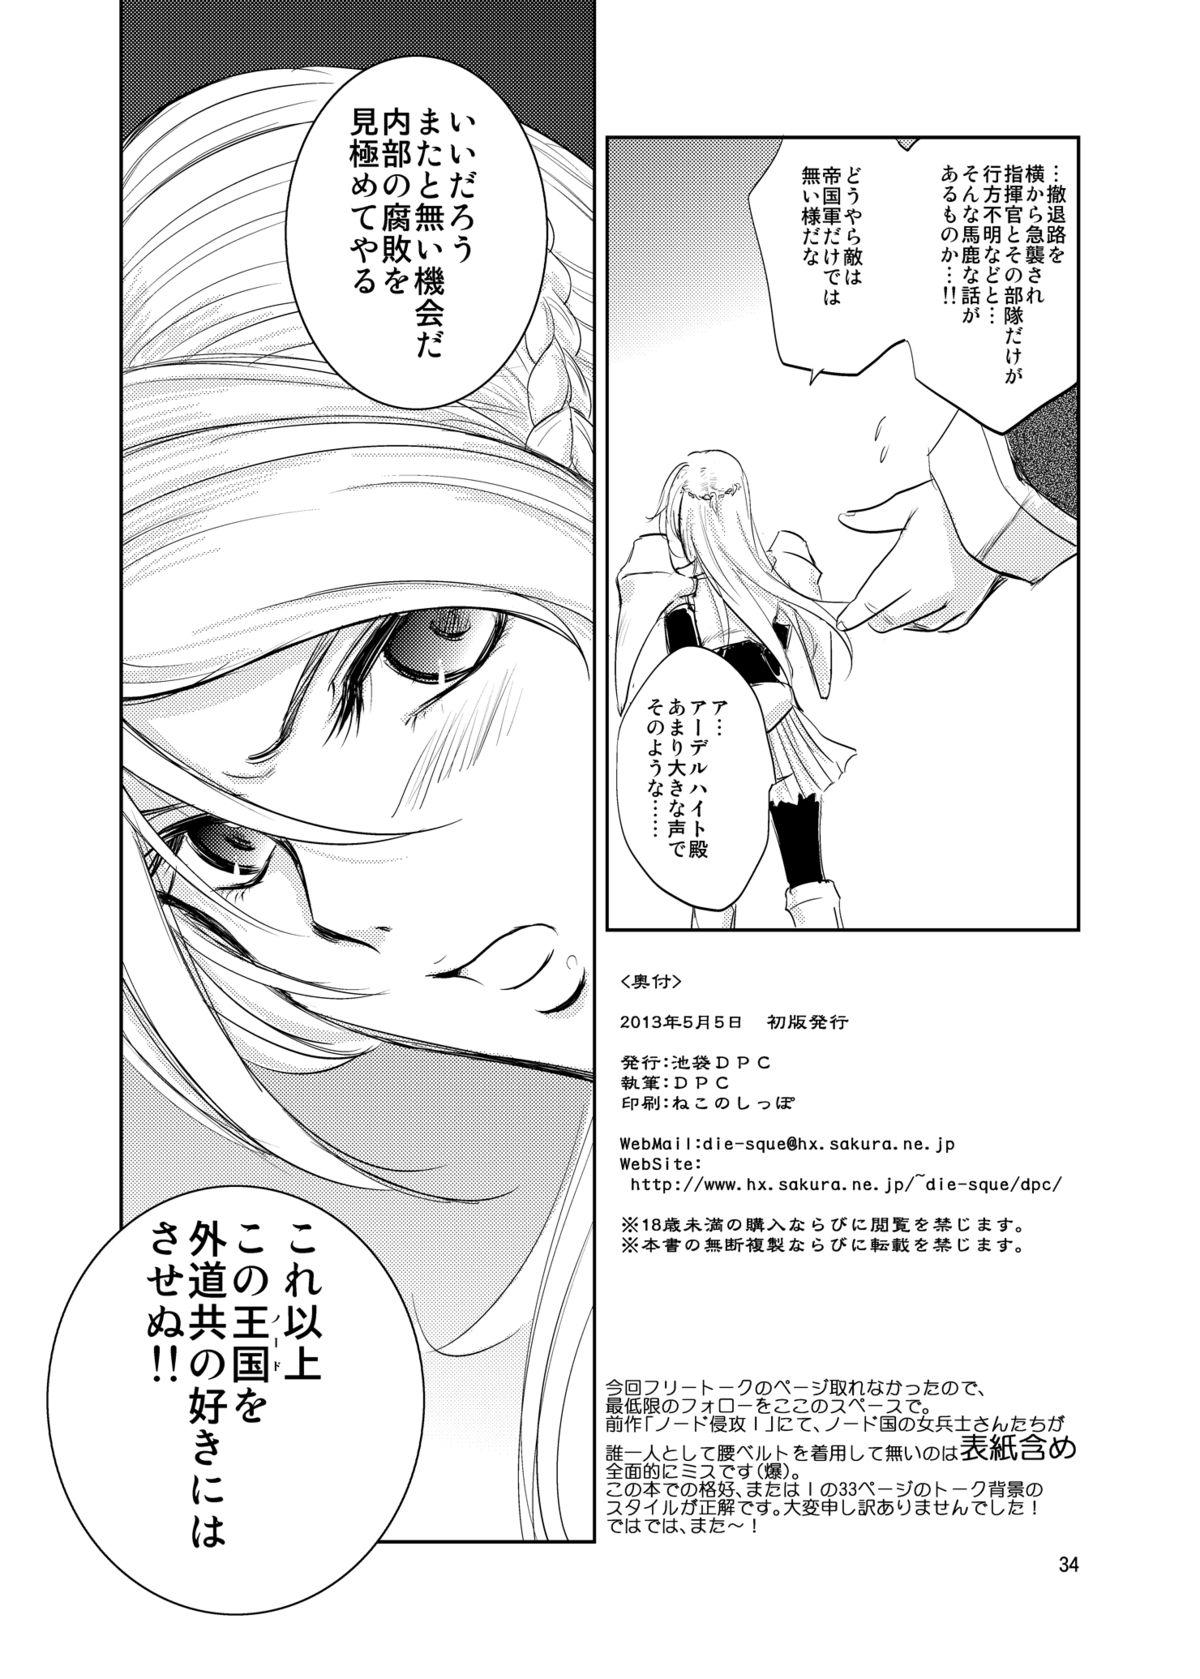 GRASSEN'S WAR ANOTHER STORY Ex #02 Node Shinkou II 33